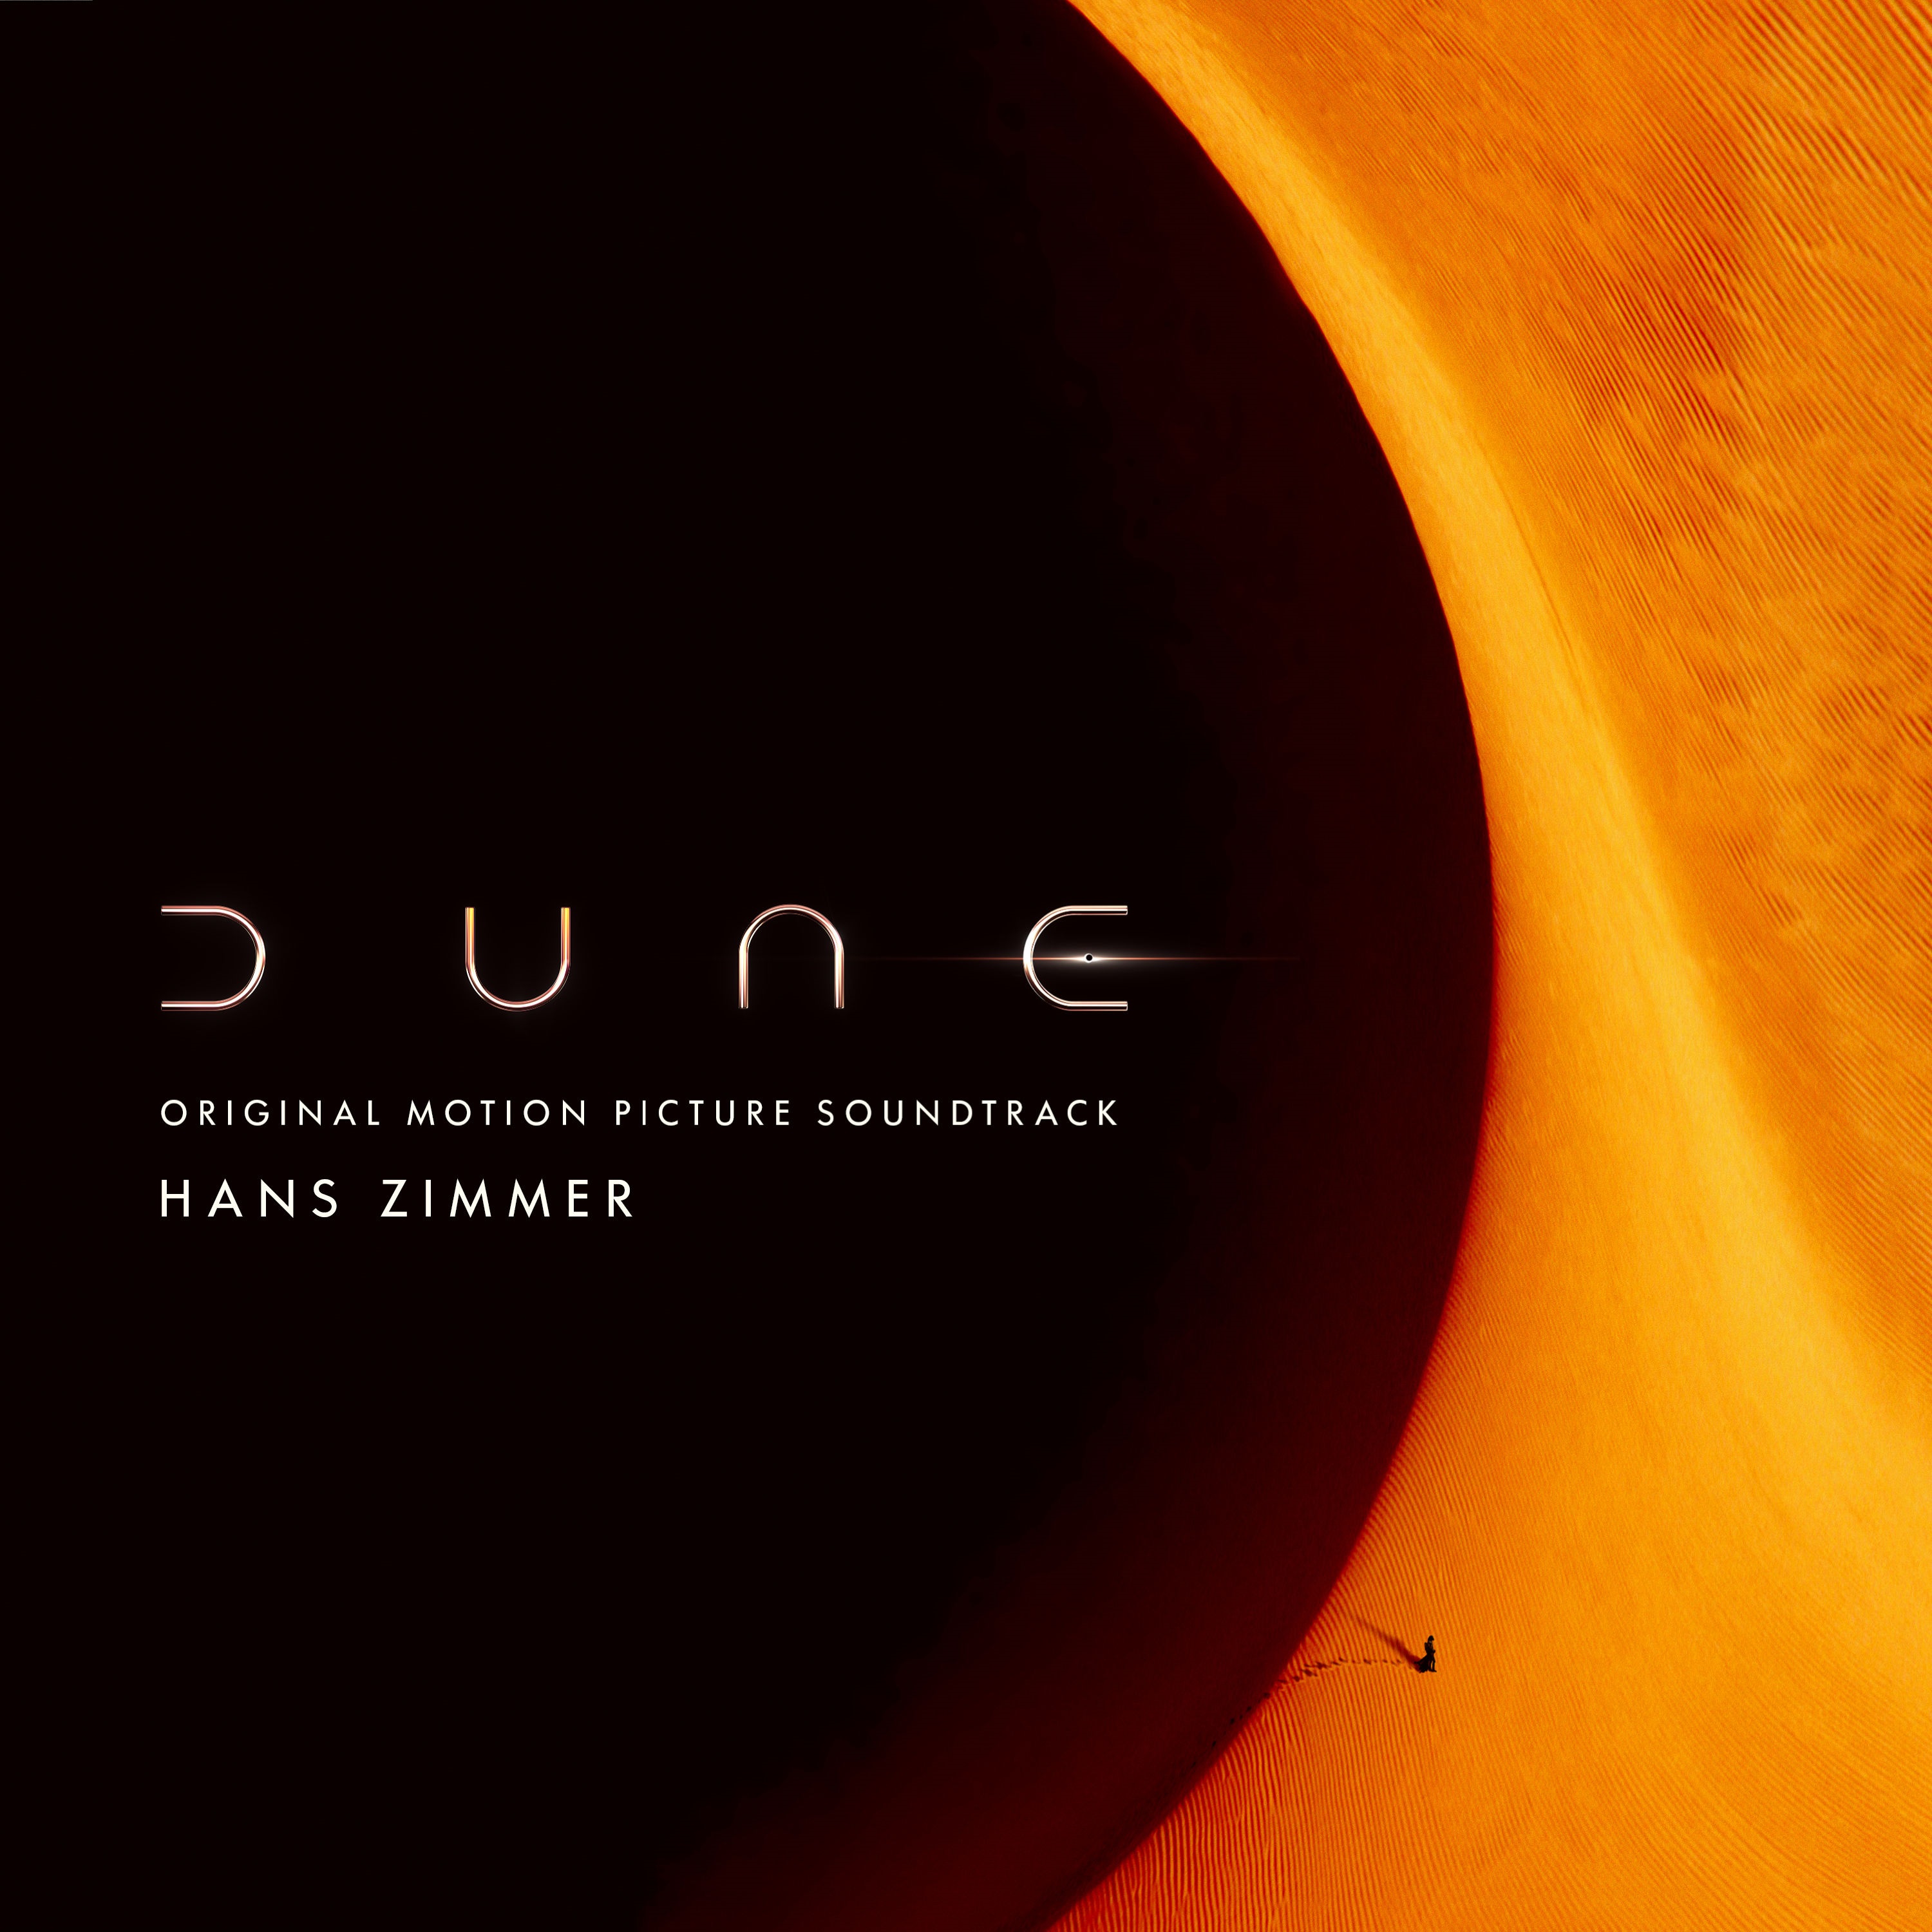 Hans Zimmer - Dune (Original Motion Picture Soundtrack) (2021) [FLAC 24bit/48kHz]